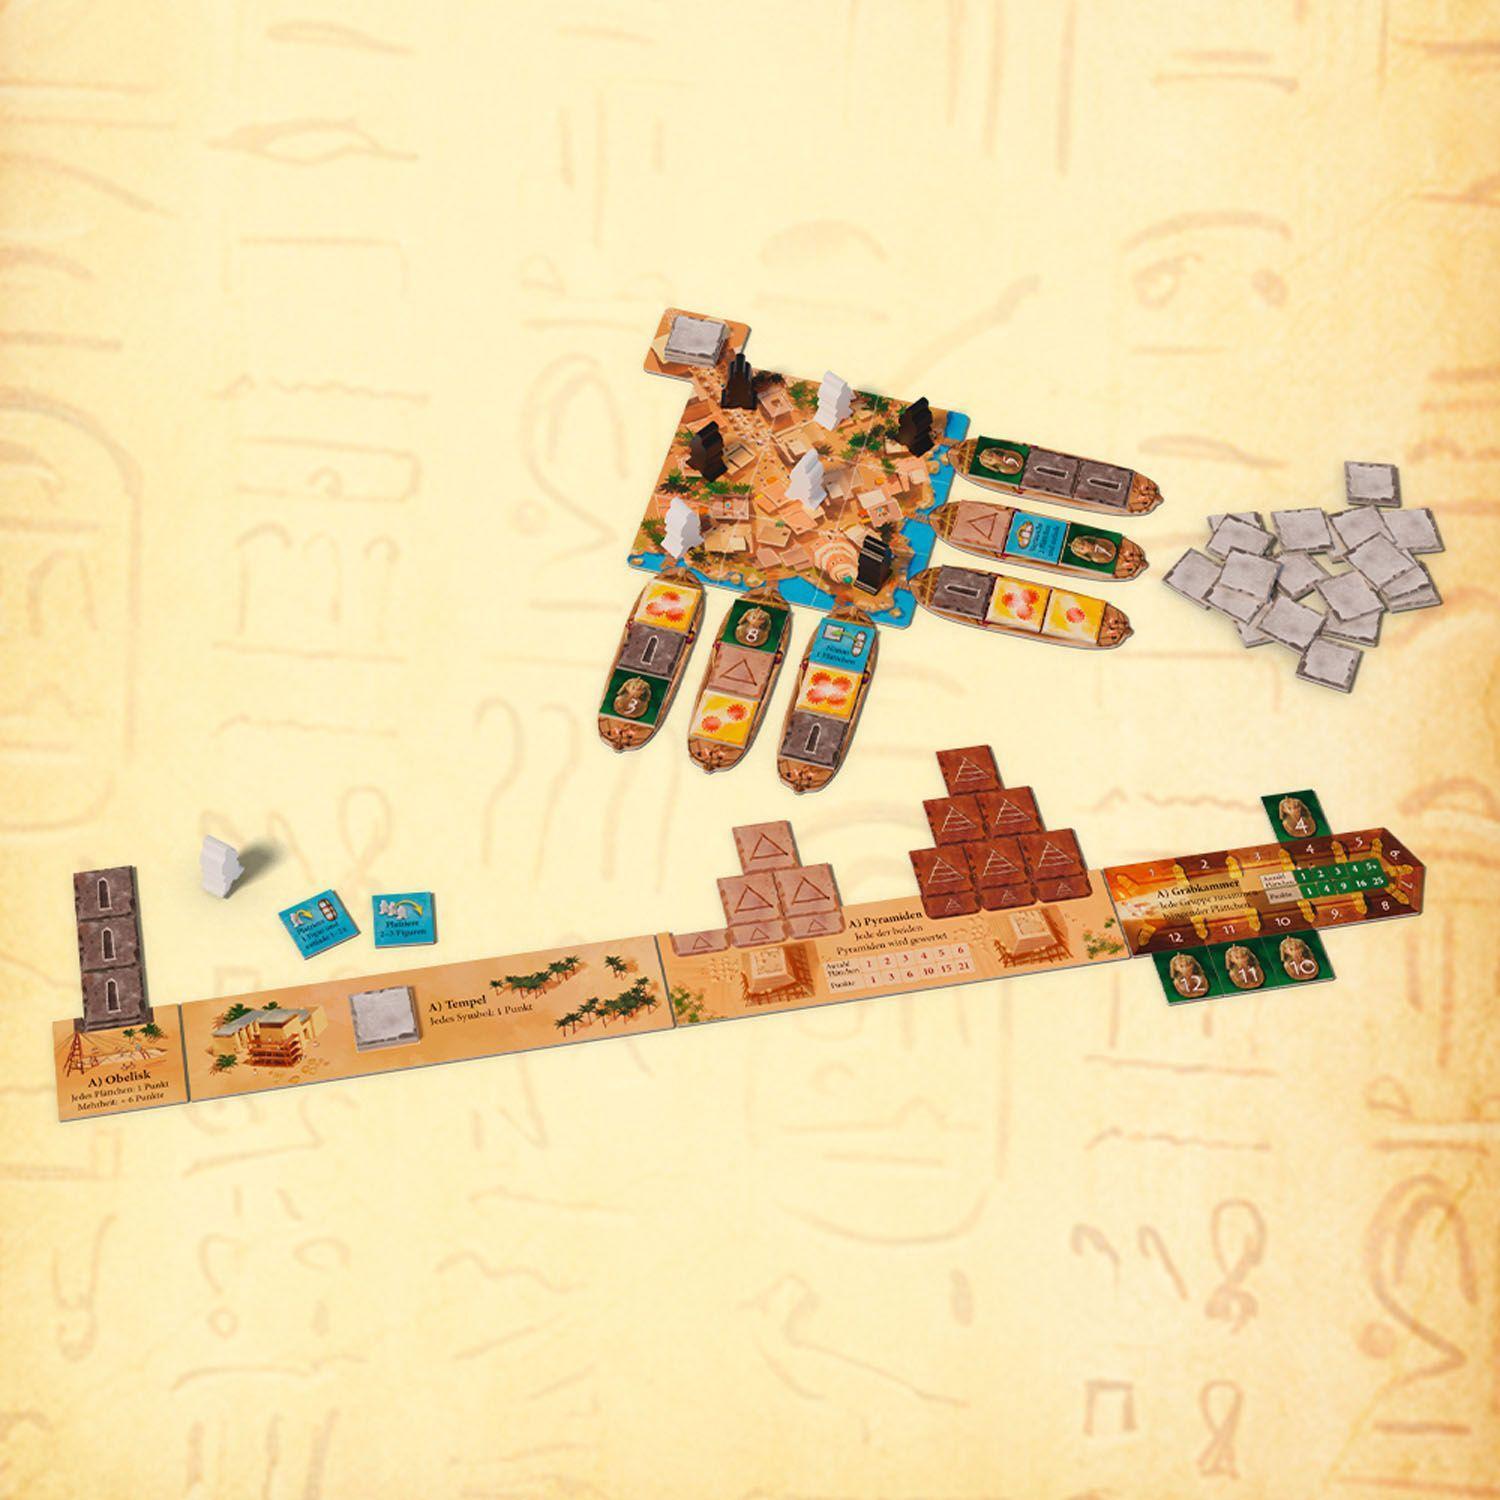 Bild: 4002051694272 | Imhotep - Das Duell | Familienspiel für 2 Spieler ab 10 Jahren | Spiel